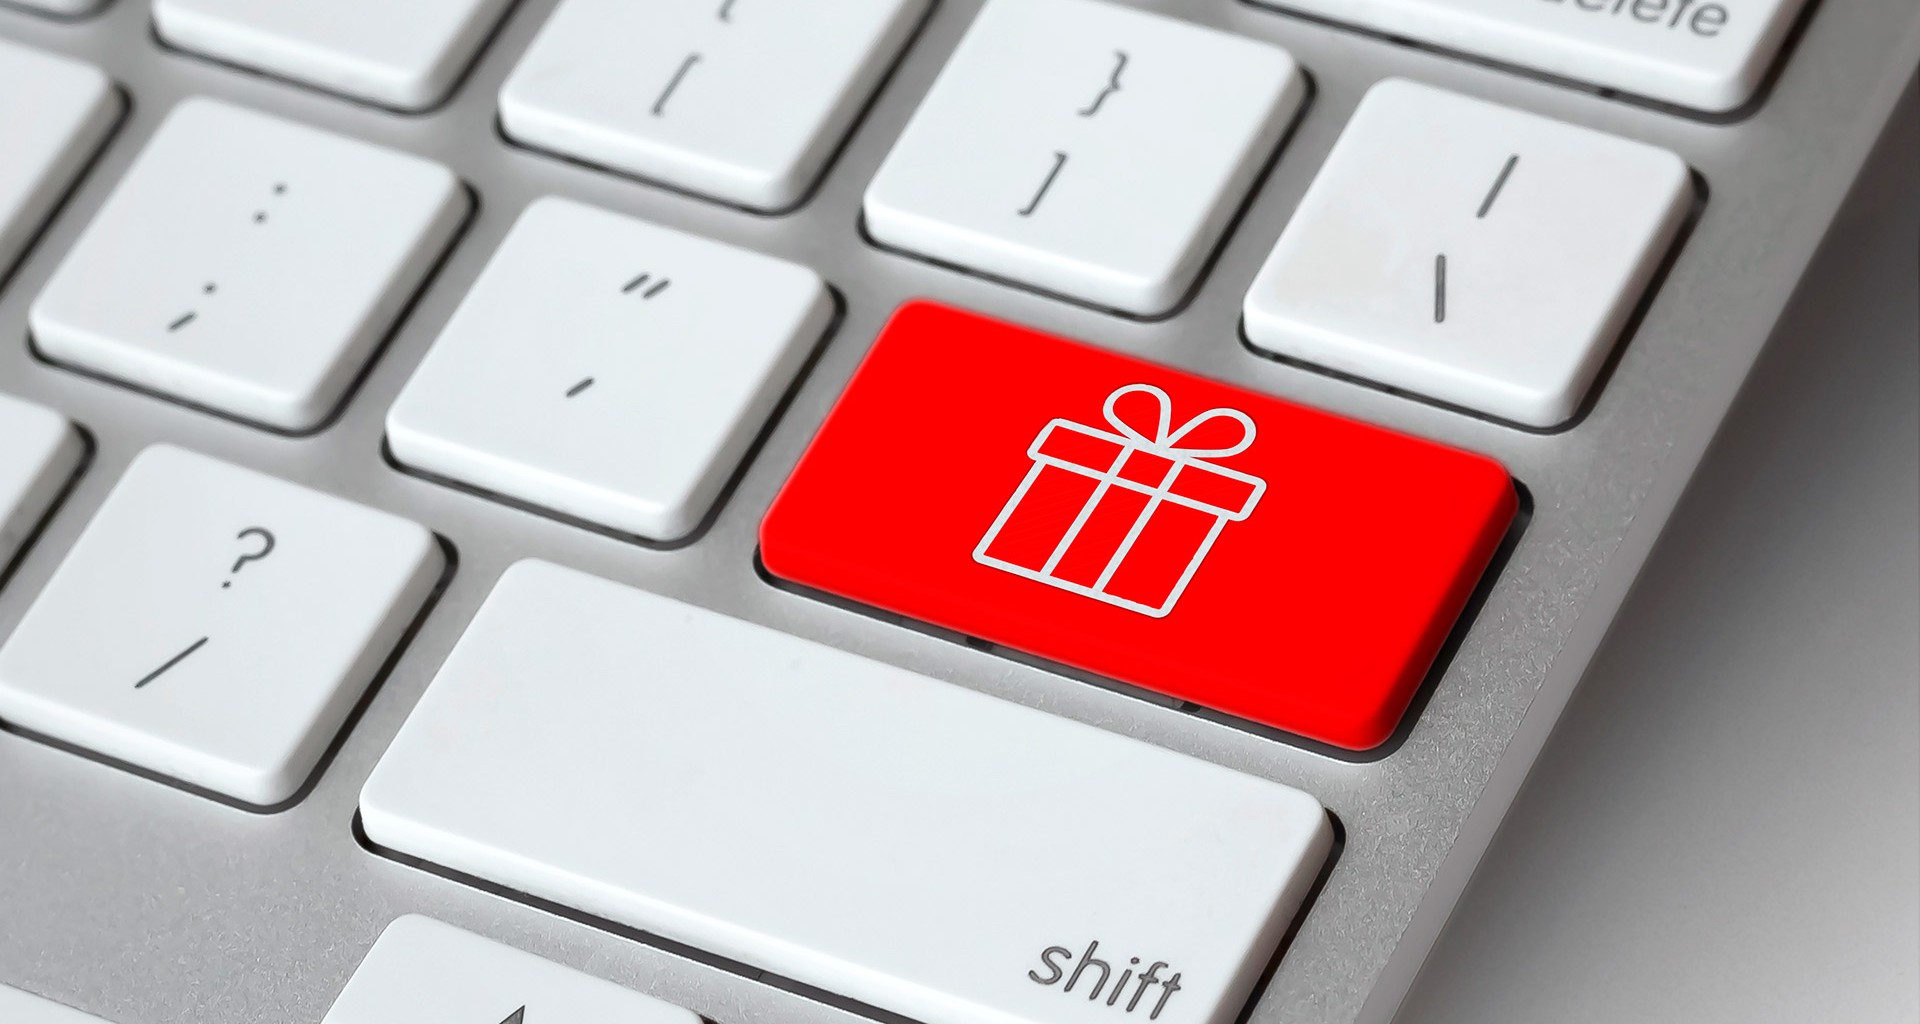 4 tips de experto del Tec para comprar en línea en fiestas decembrinas